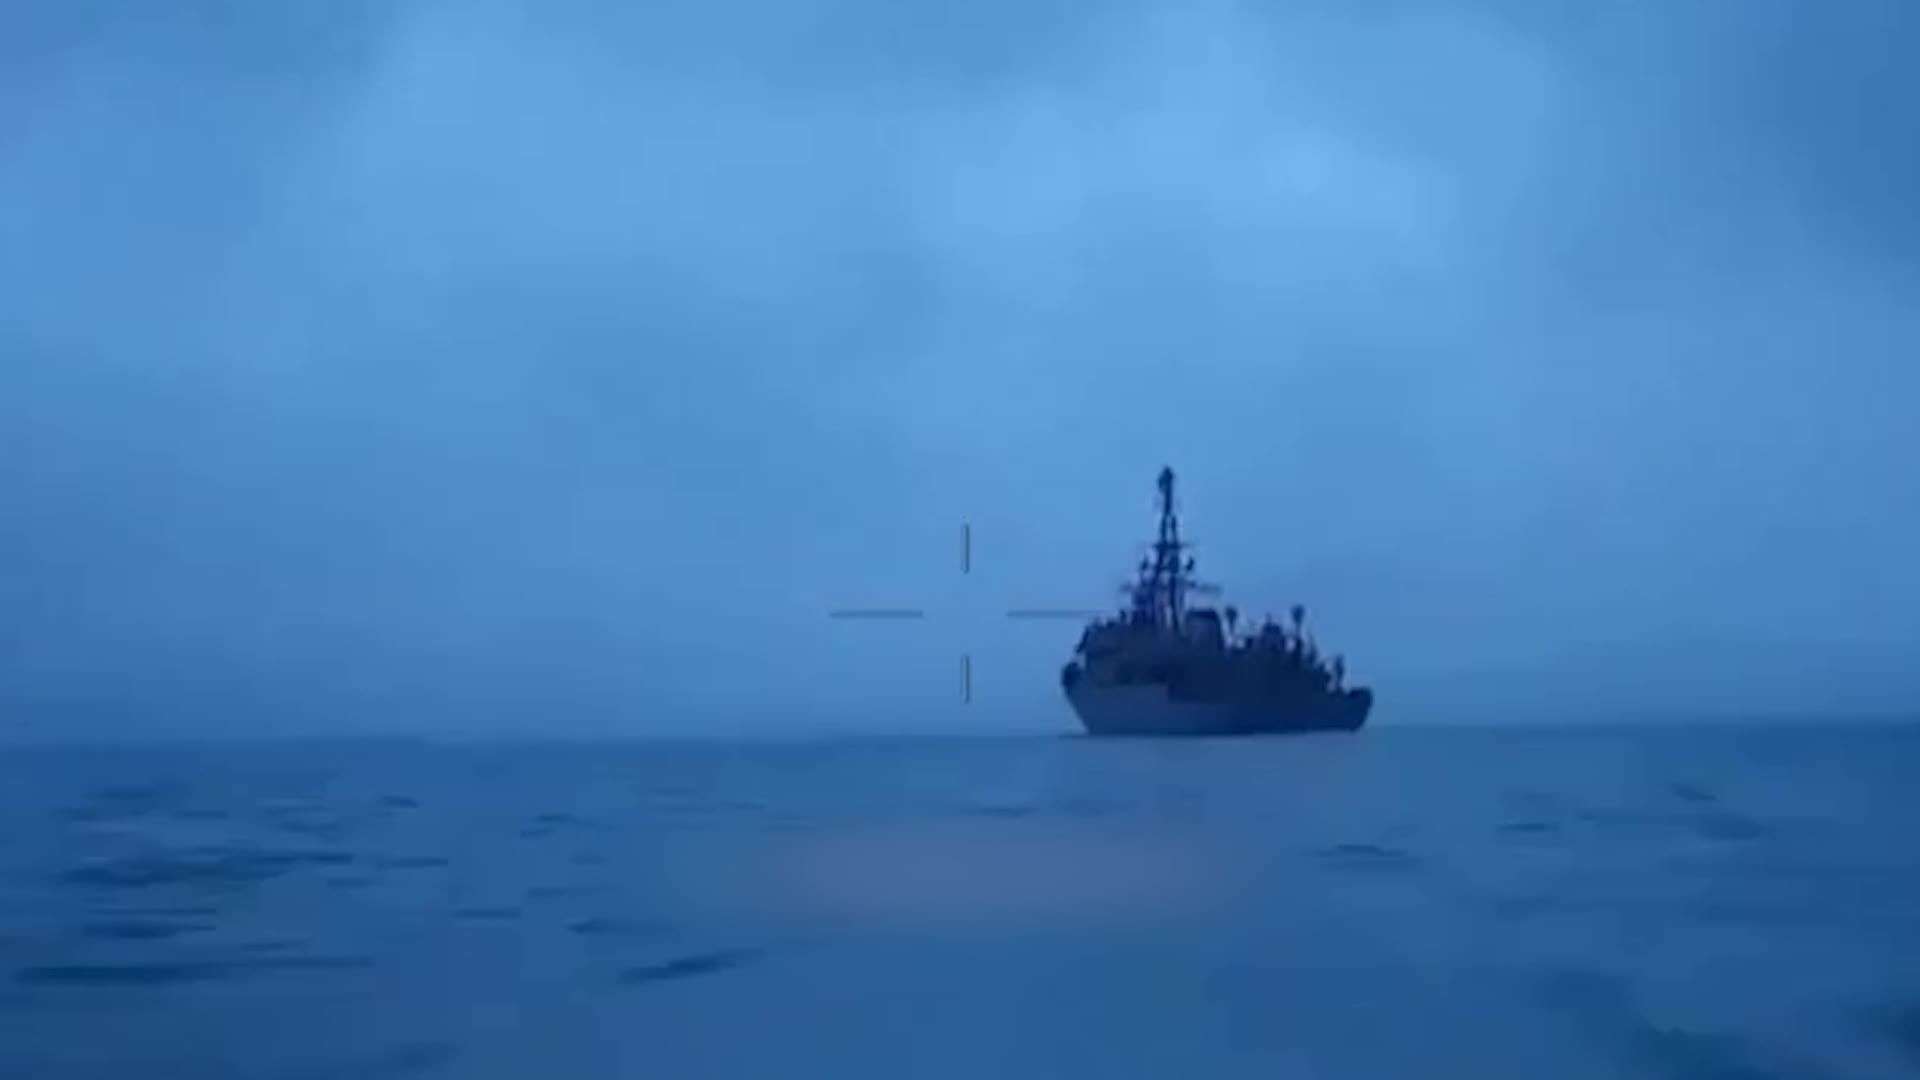 Атака на российский корабль сегодня